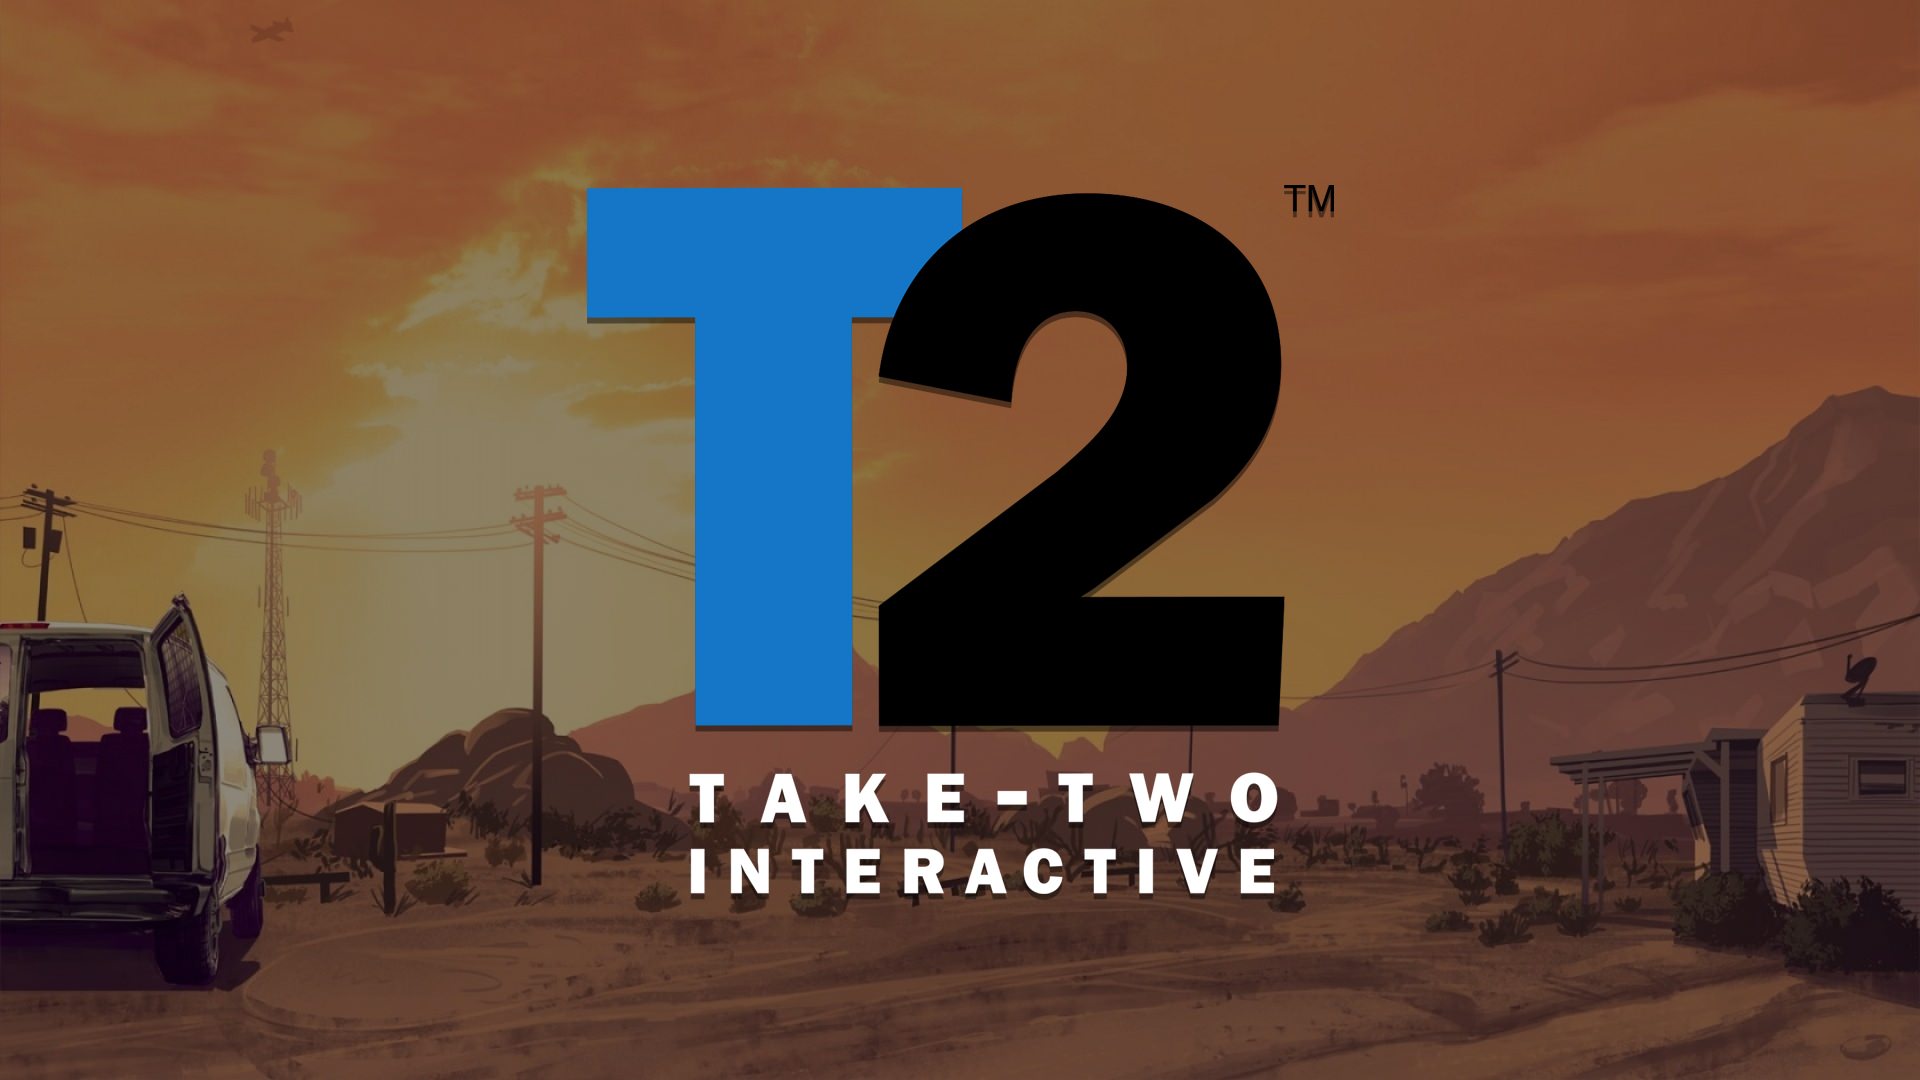 لوگوی تیک تو اینتراکتیو برای E3 2021